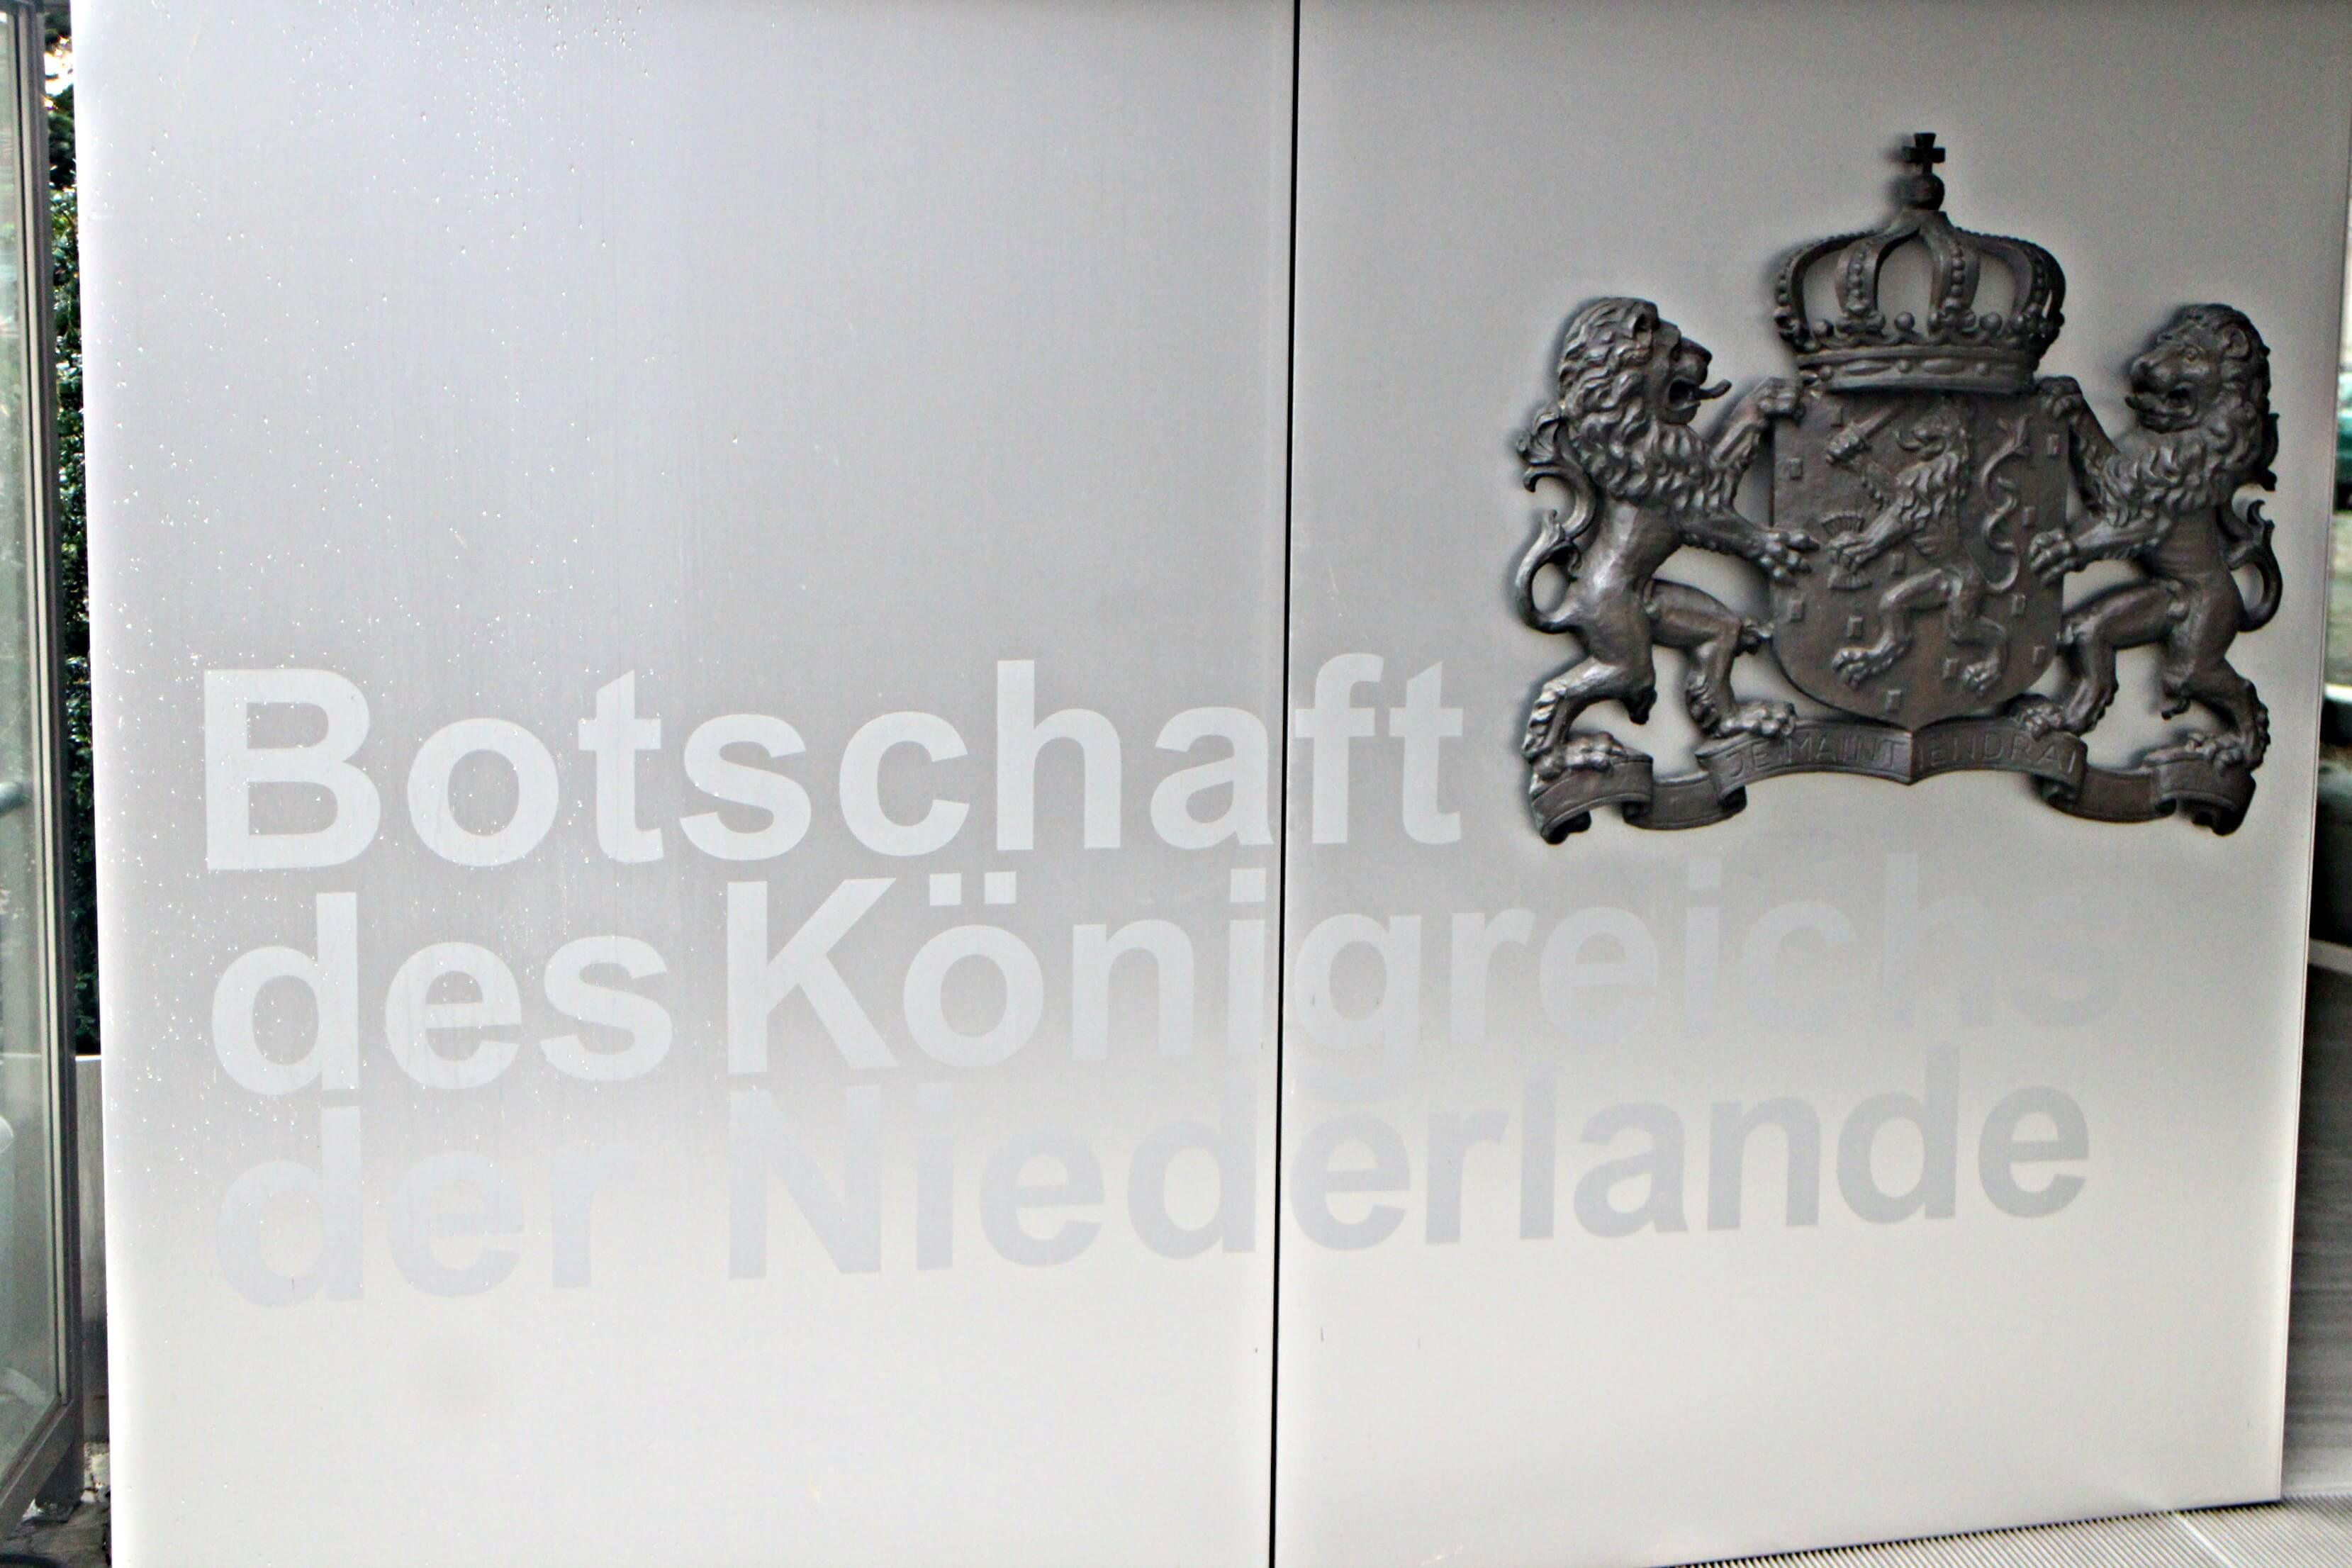 Ambassade van het Koninkrijk der Nederlanden in Berlijn